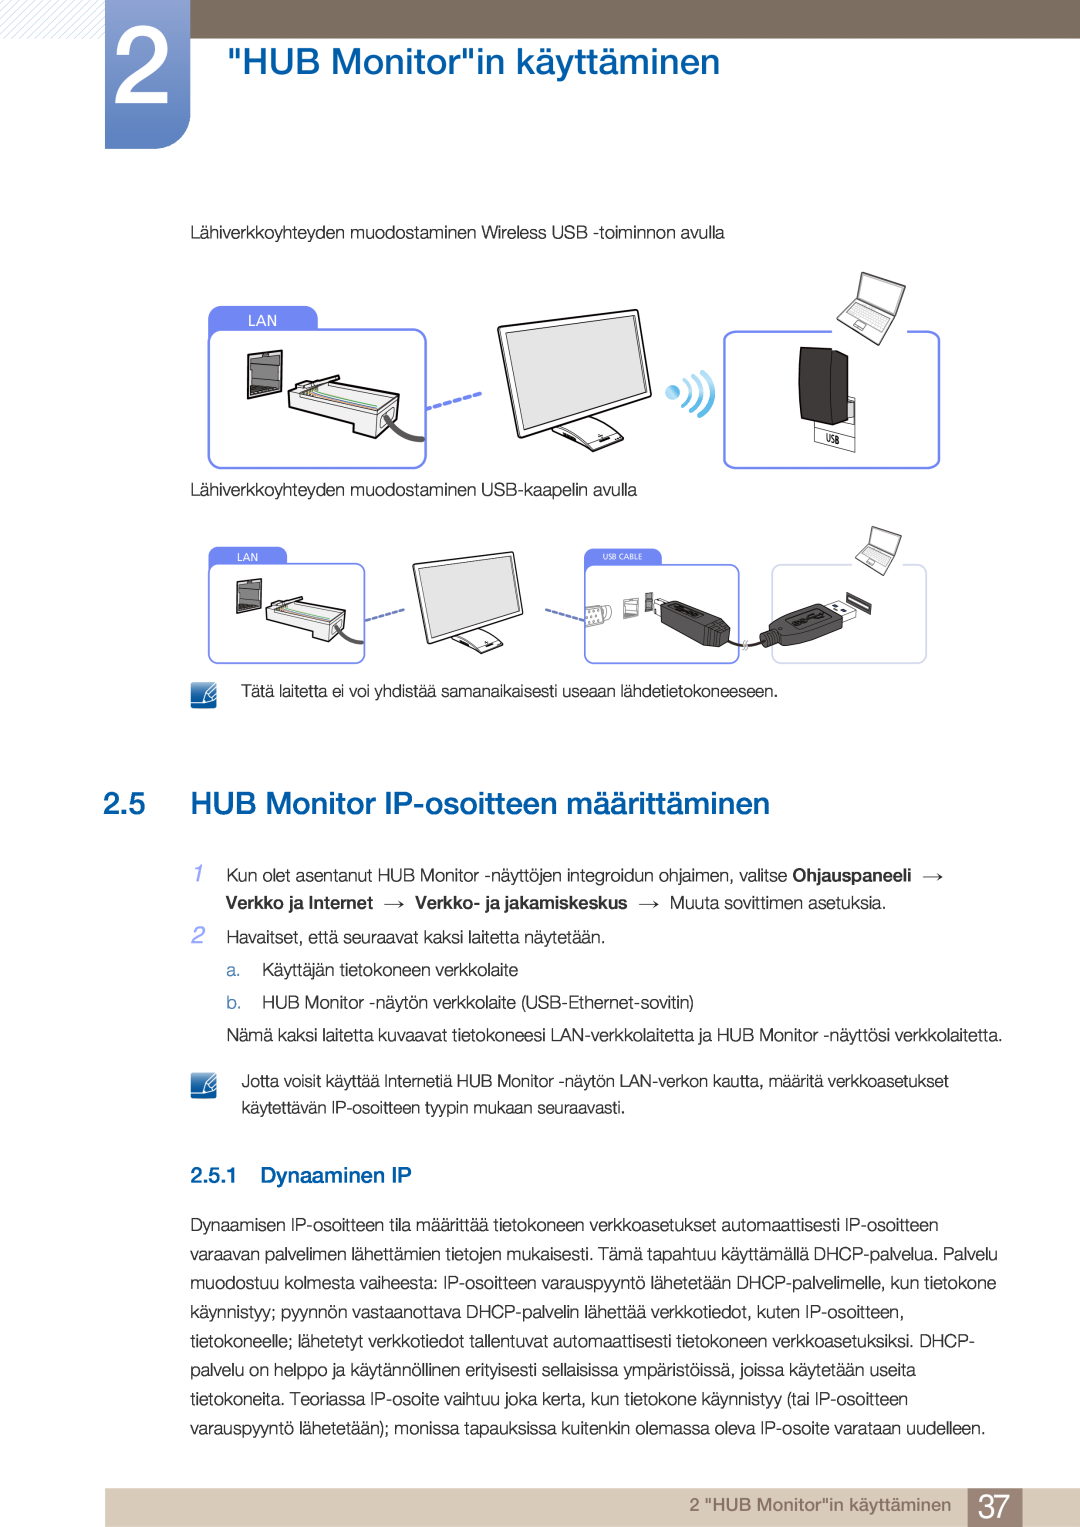 Samsung LC27A750XS/EN, LC23A750XS/EN manual HUB Monitor IP-osoitteen määrittäminen, Dynaaminen IP, HUB Monitorin käyttäminen 